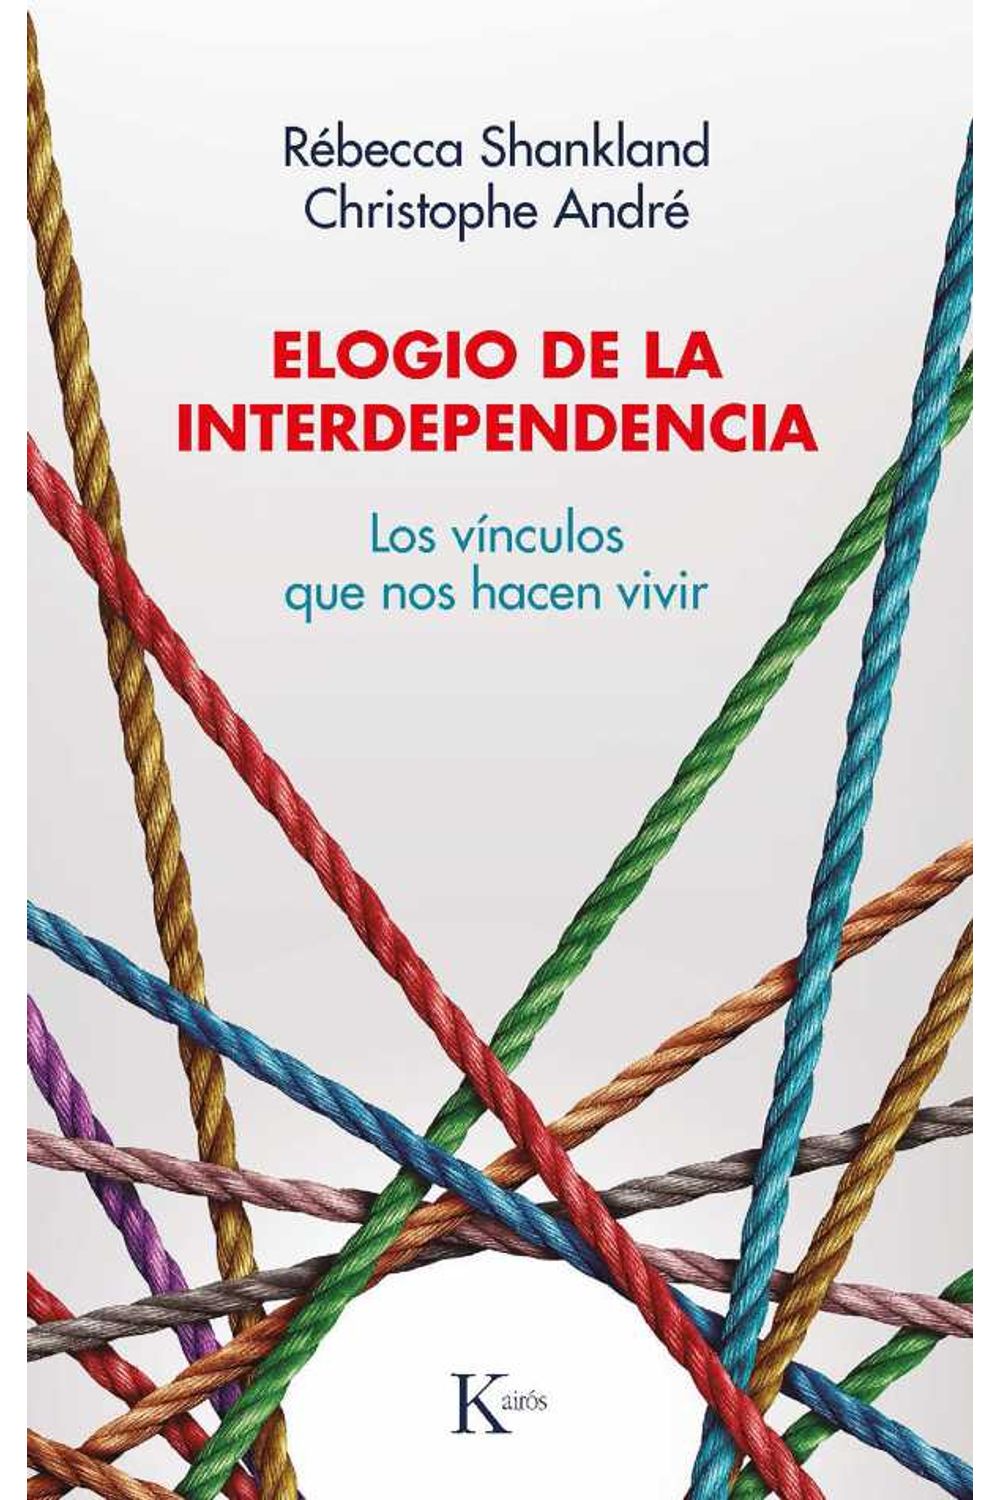 bw-elogio-de-la-interdependencia-editorial-kairs-9788499889054